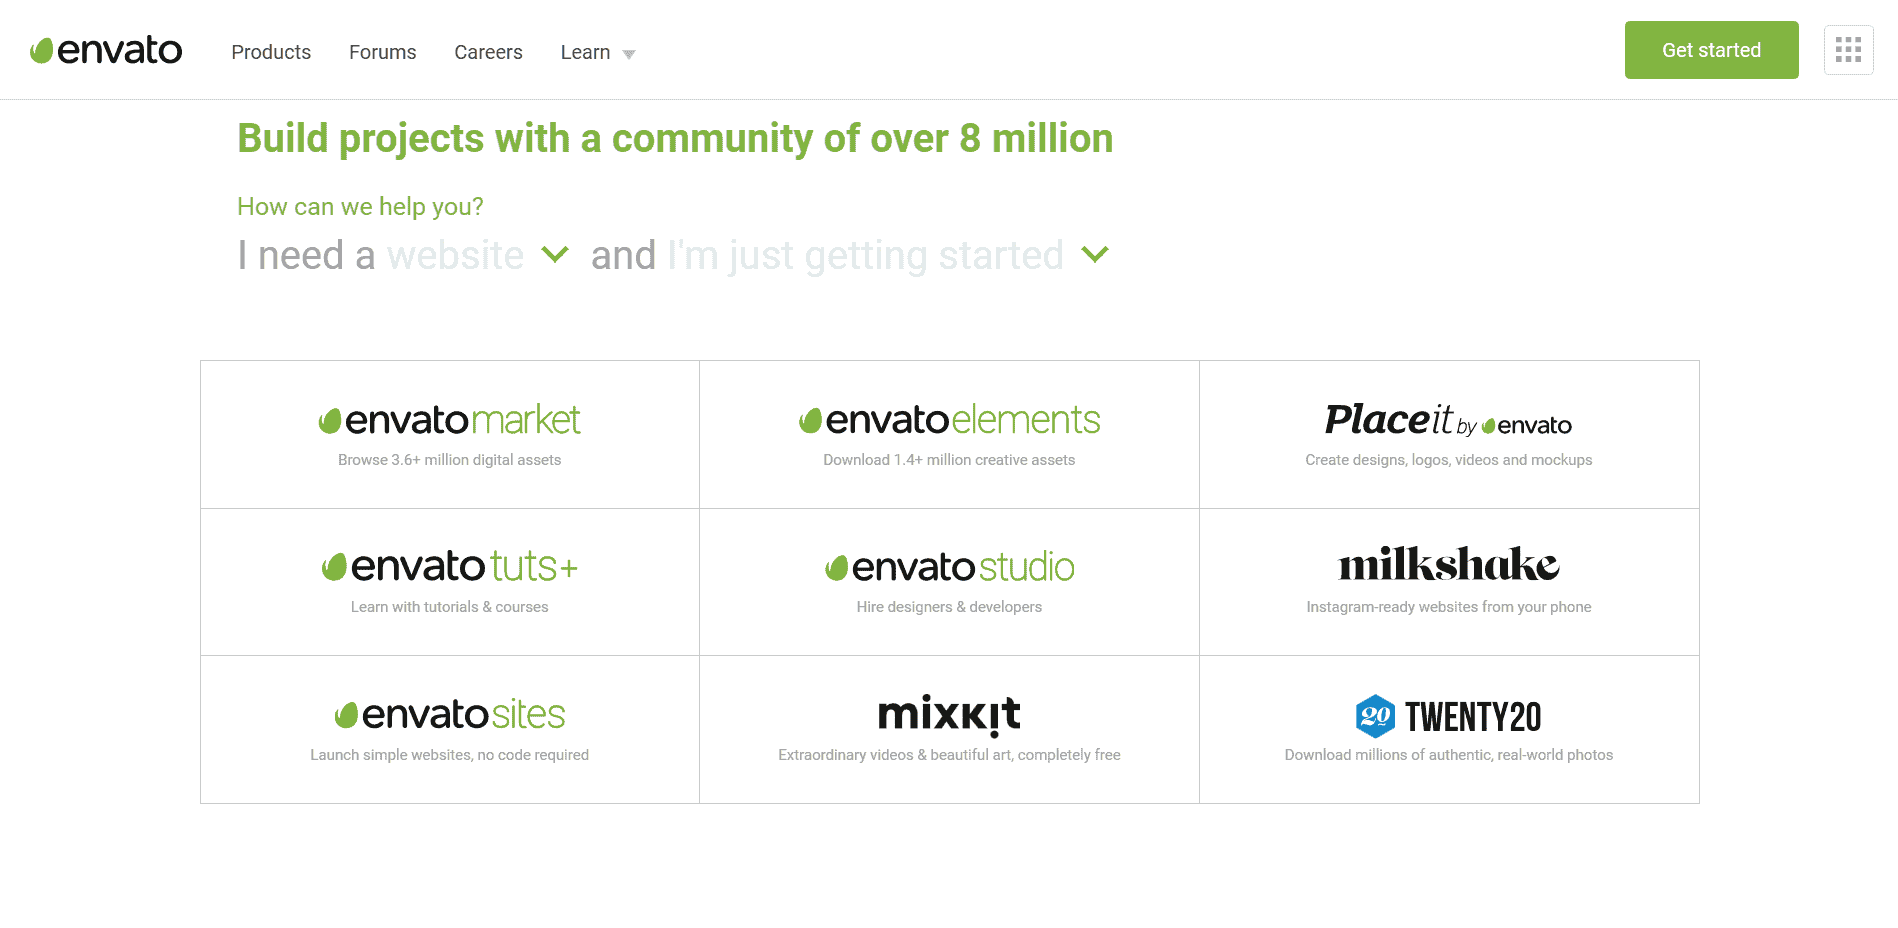 Envato - Get Started 首頁所列之旗下滿足不同需求的網站